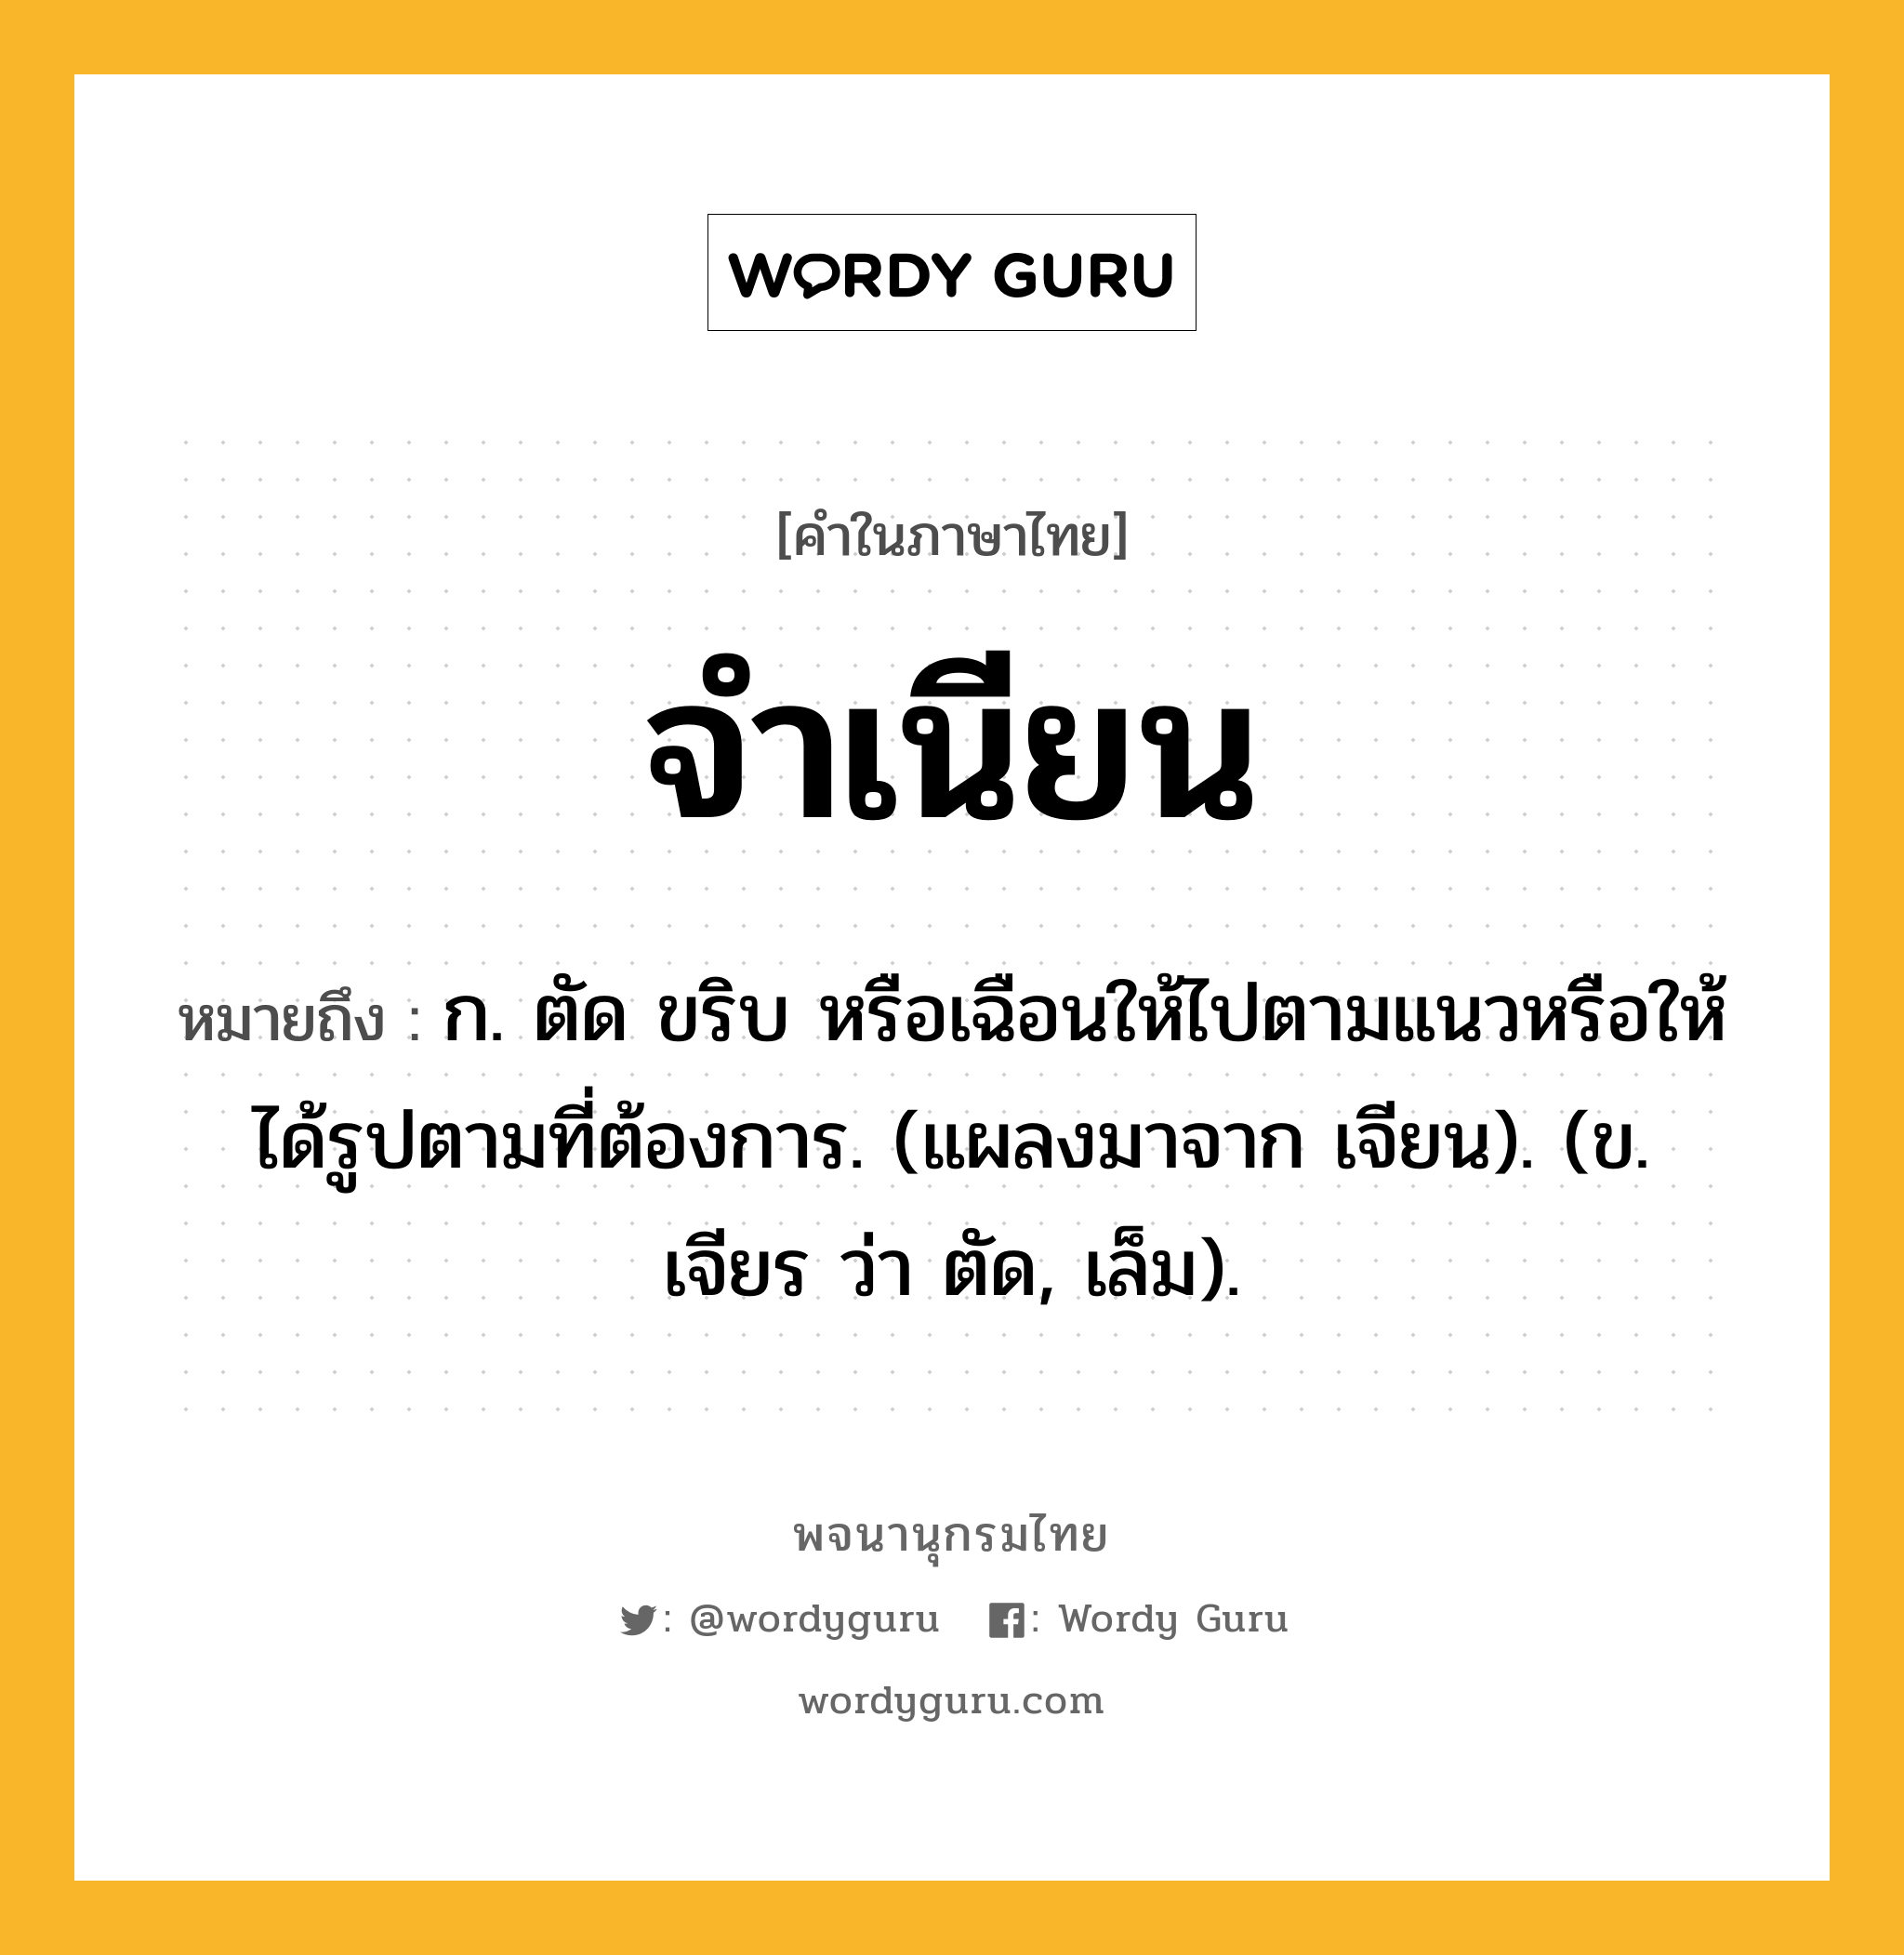 จำเนียน ความหมาย หมายถึงอะไร?, คำในภาษาไทย จำเนียน หมายถึง ก. ตัด ขริบ หรือเฉือนให้ไปตามแนวหรือให้ได้รูปตามที่ต้องการ. (แผลงมาจาก เจียน). (ข. เจียร ว่า ตัด, เล็ม).